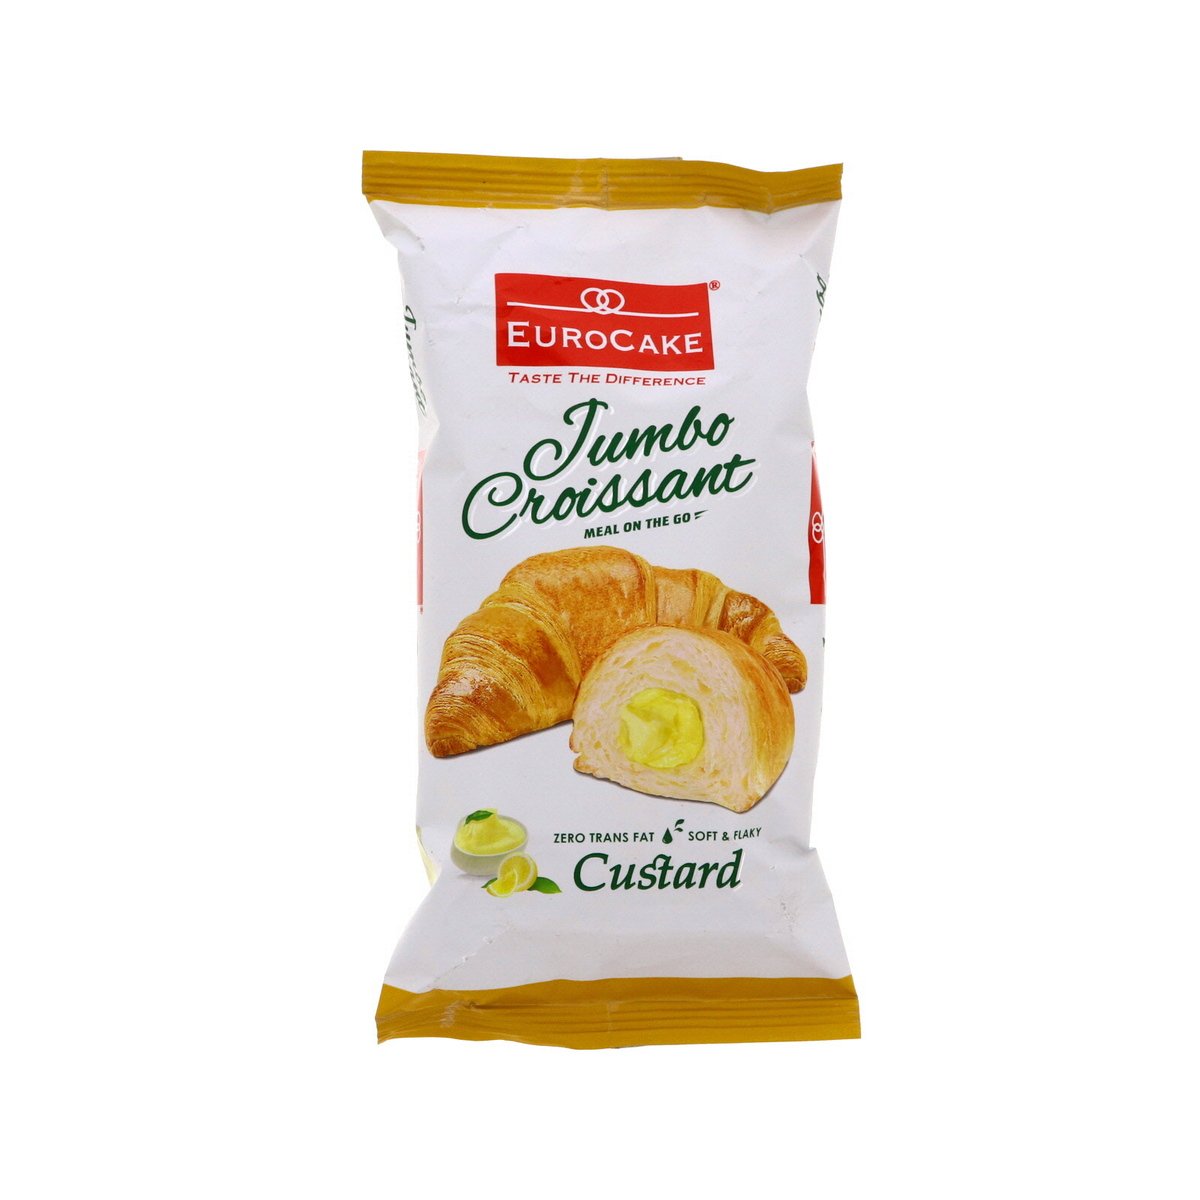 Euro Cake Jumbo Croissant Custard 55 g